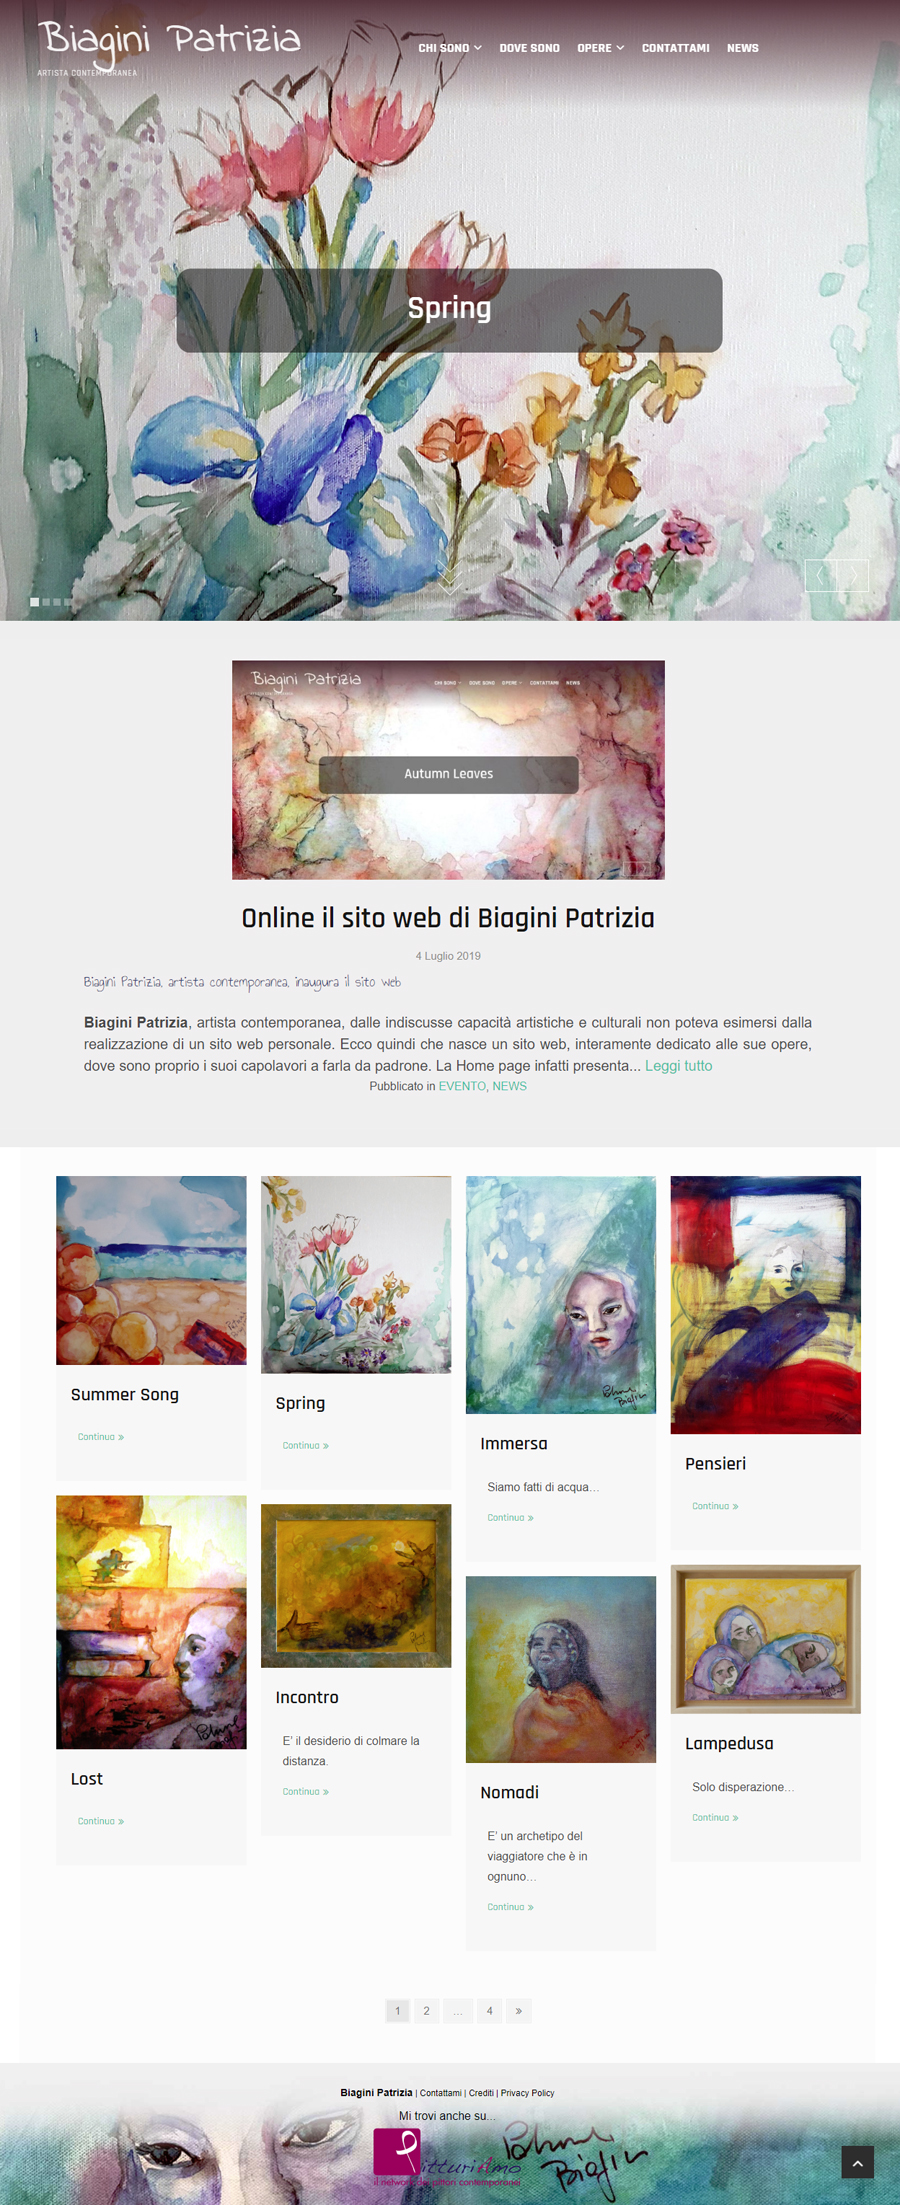 Patrizia Biagini - Il sito della pittrice è online - Homepage